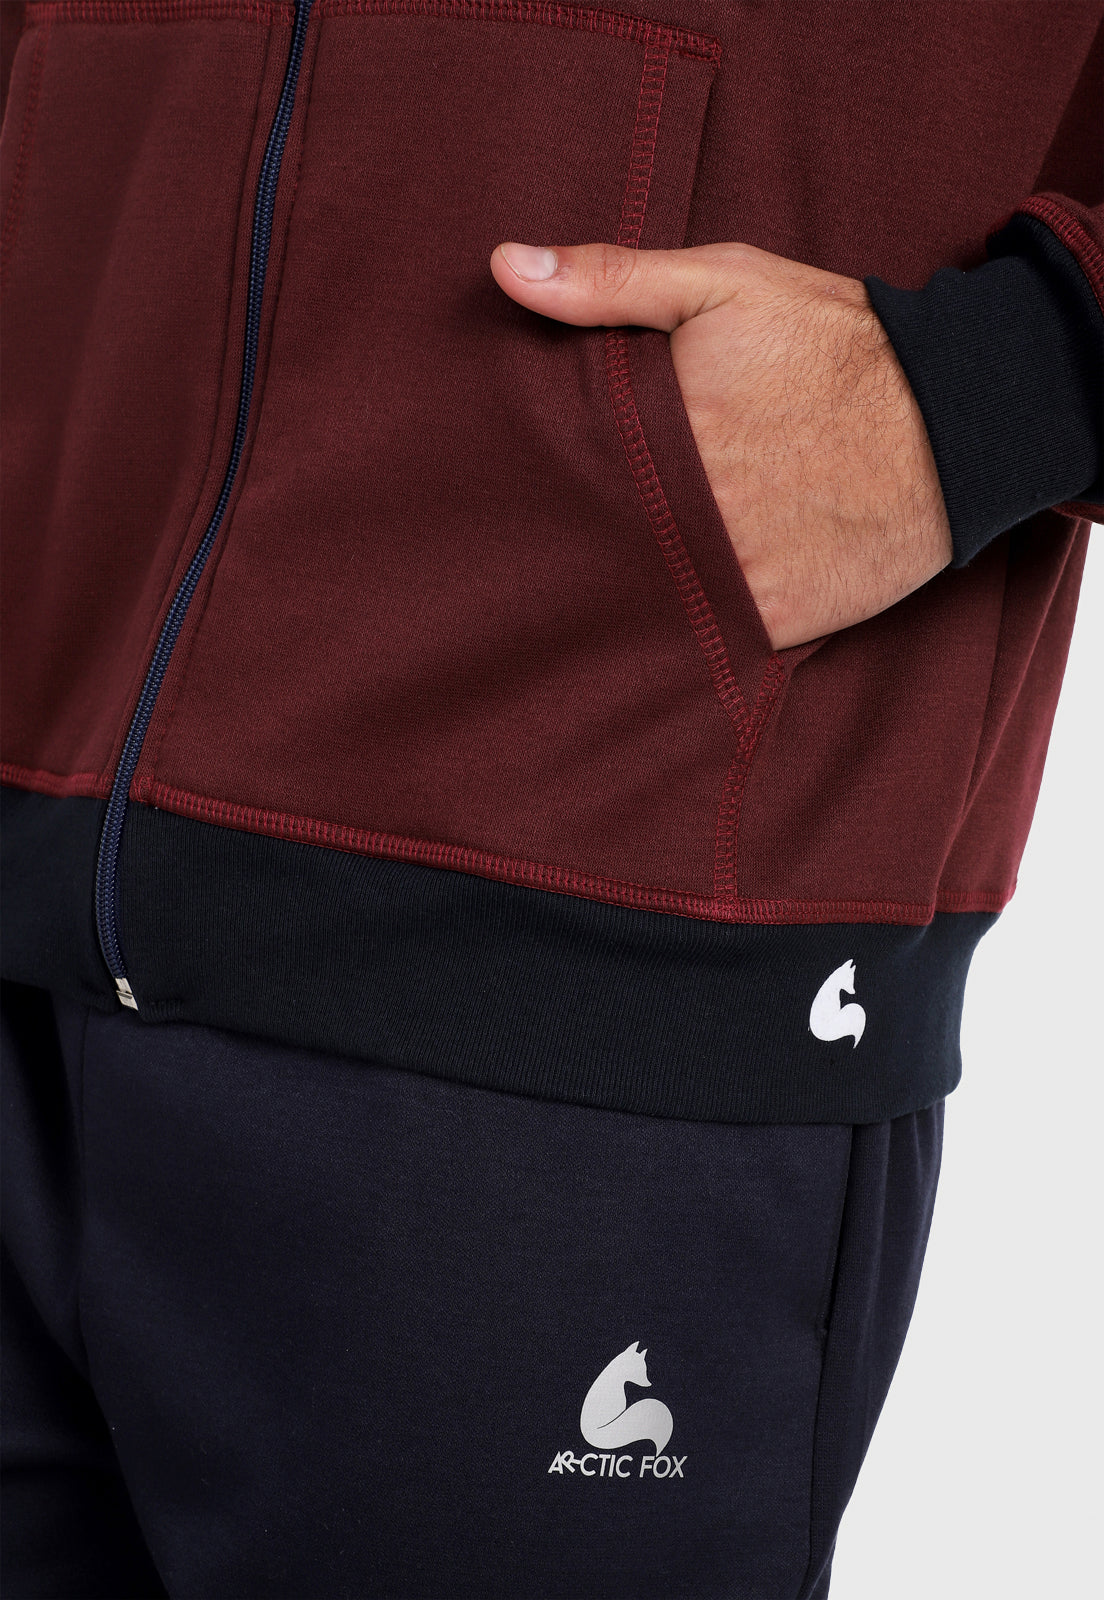 Detalle en bolsillo de hombre vistiendo la chaqueta hoodie vinotinto para hombre con capota forrada en azul.